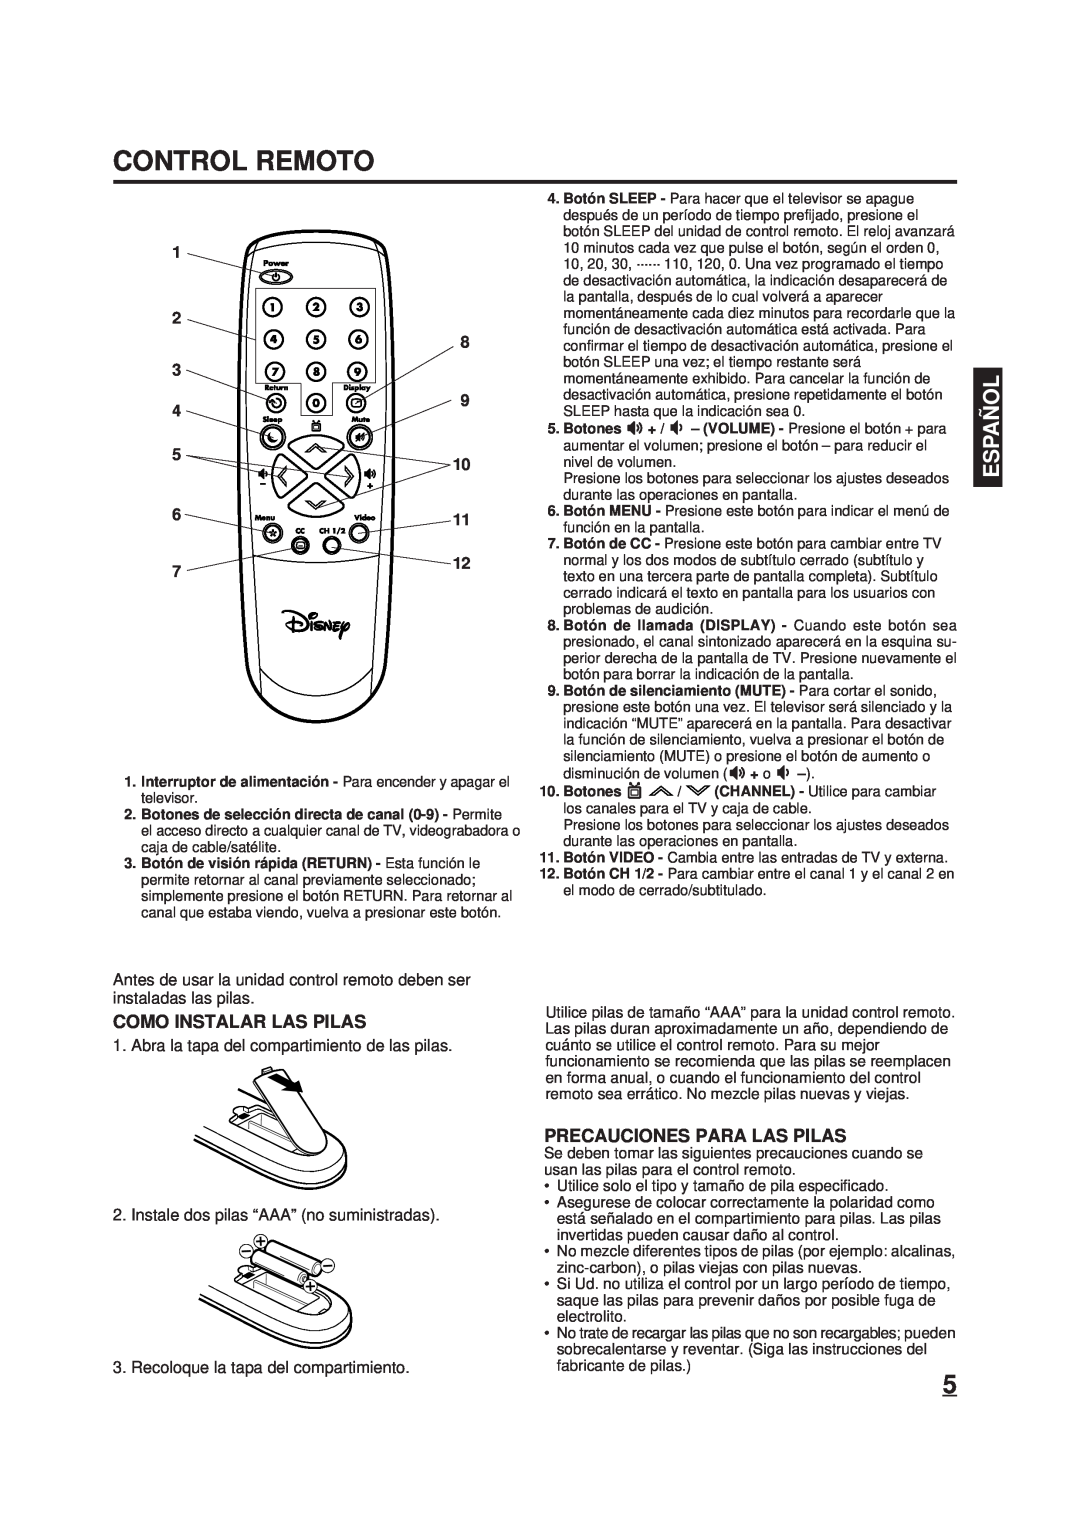 Memorex DT1900-C manual Control Remoto, Como Instalar Las Pilas, Precauciones Para Las Pilas, Españ Ol 